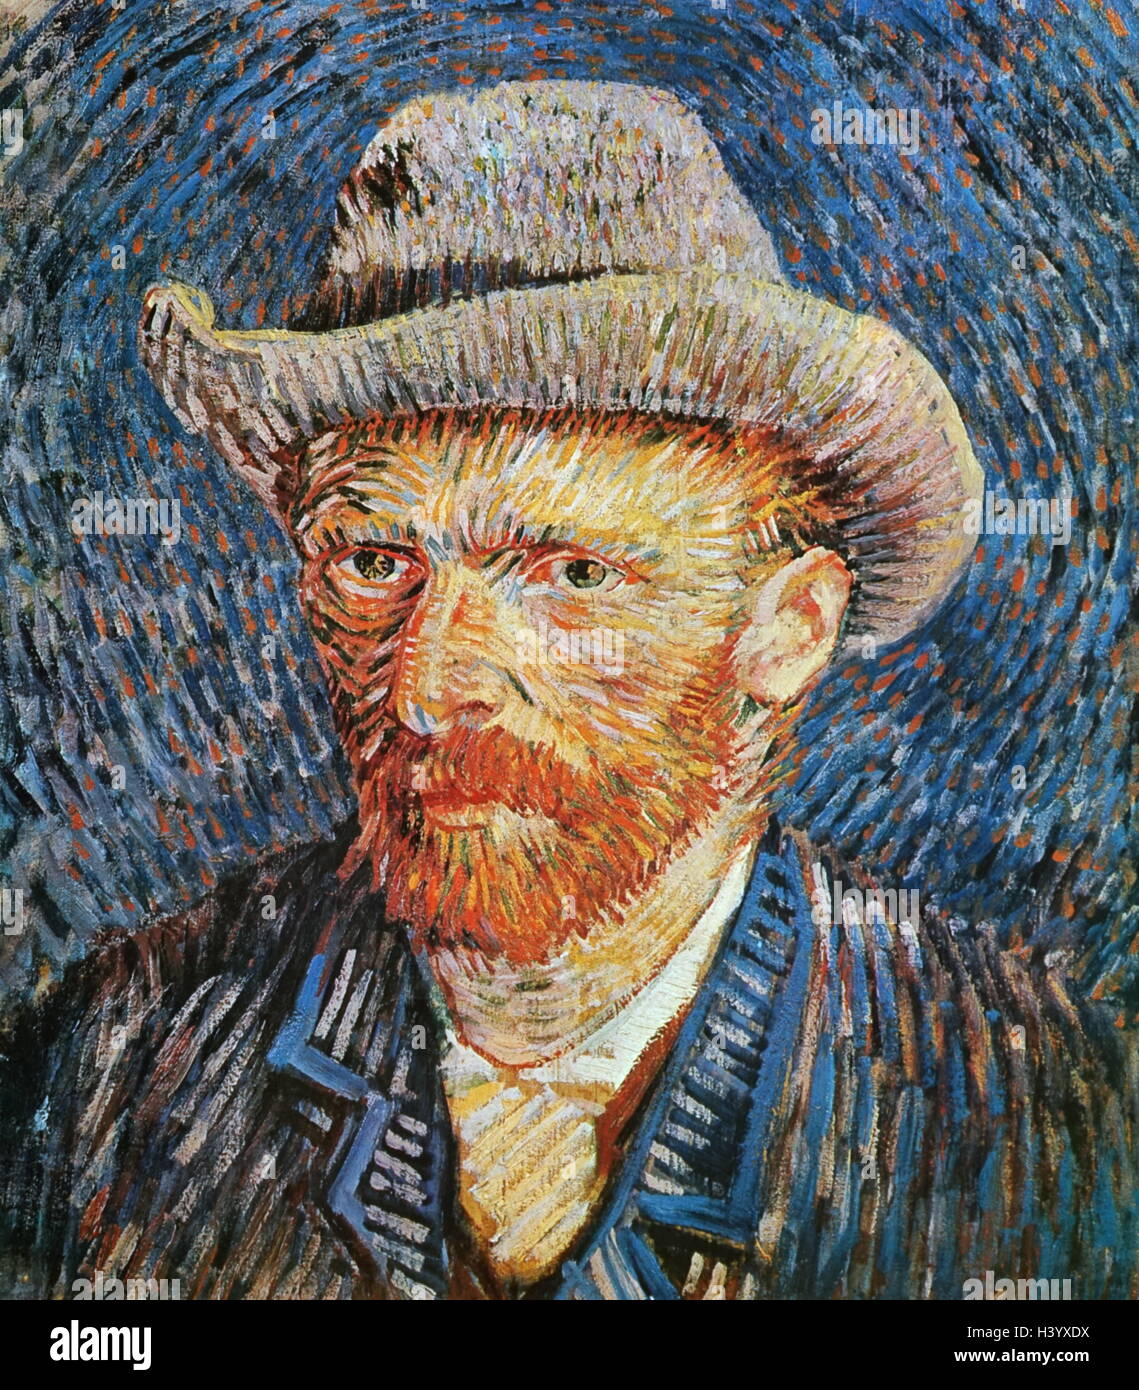 Selbstbildnis mit grau Filz Hut von Vincent Van Gogh (1853-1890) niederländische Post-Impressionisten Maler. Vom 19. Jahrhundert Stockfoto